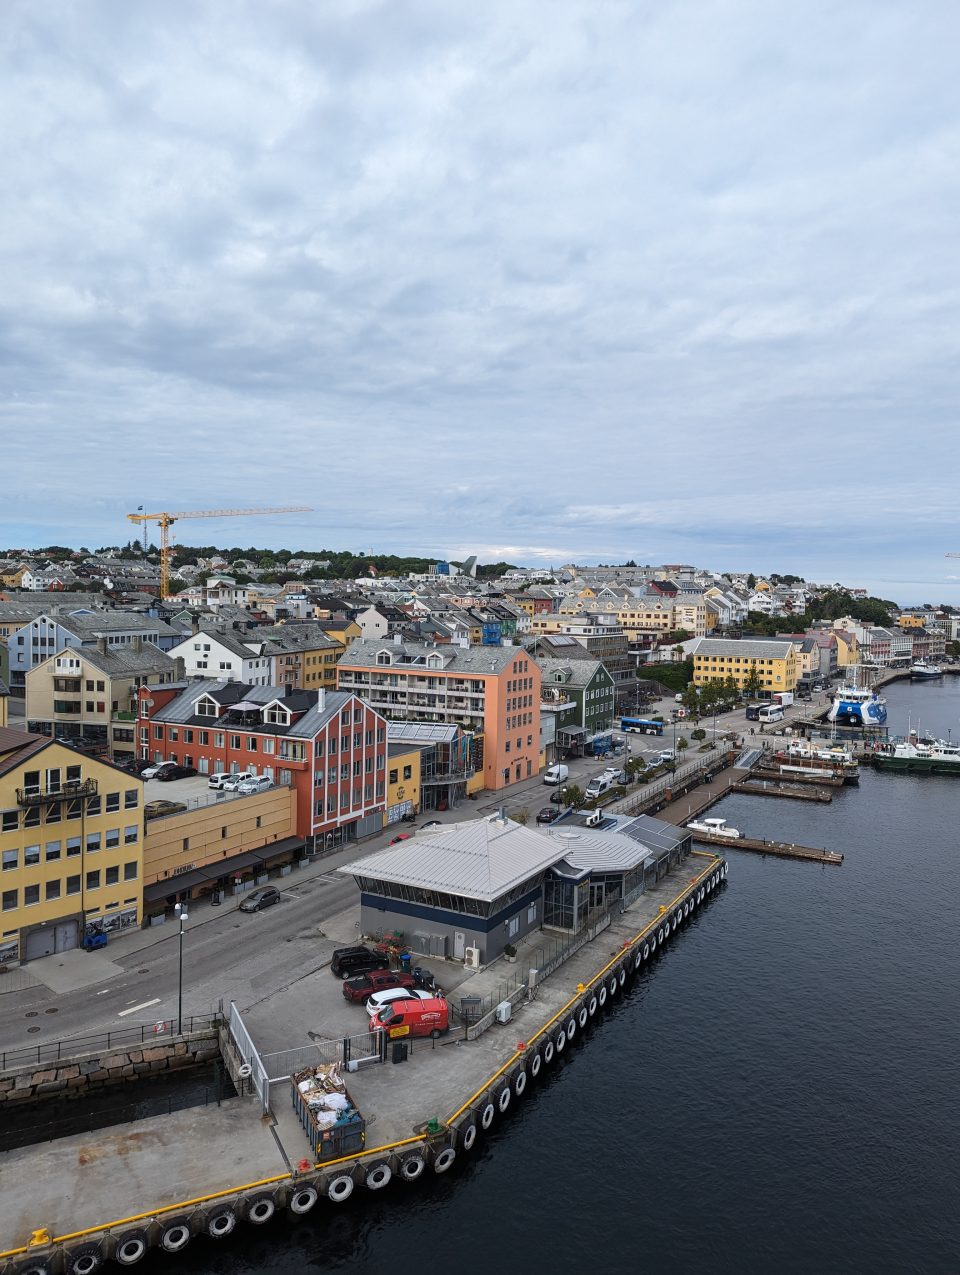 Kreuzfahrt mit Kindern: Norwegen mit Nicko Cruises